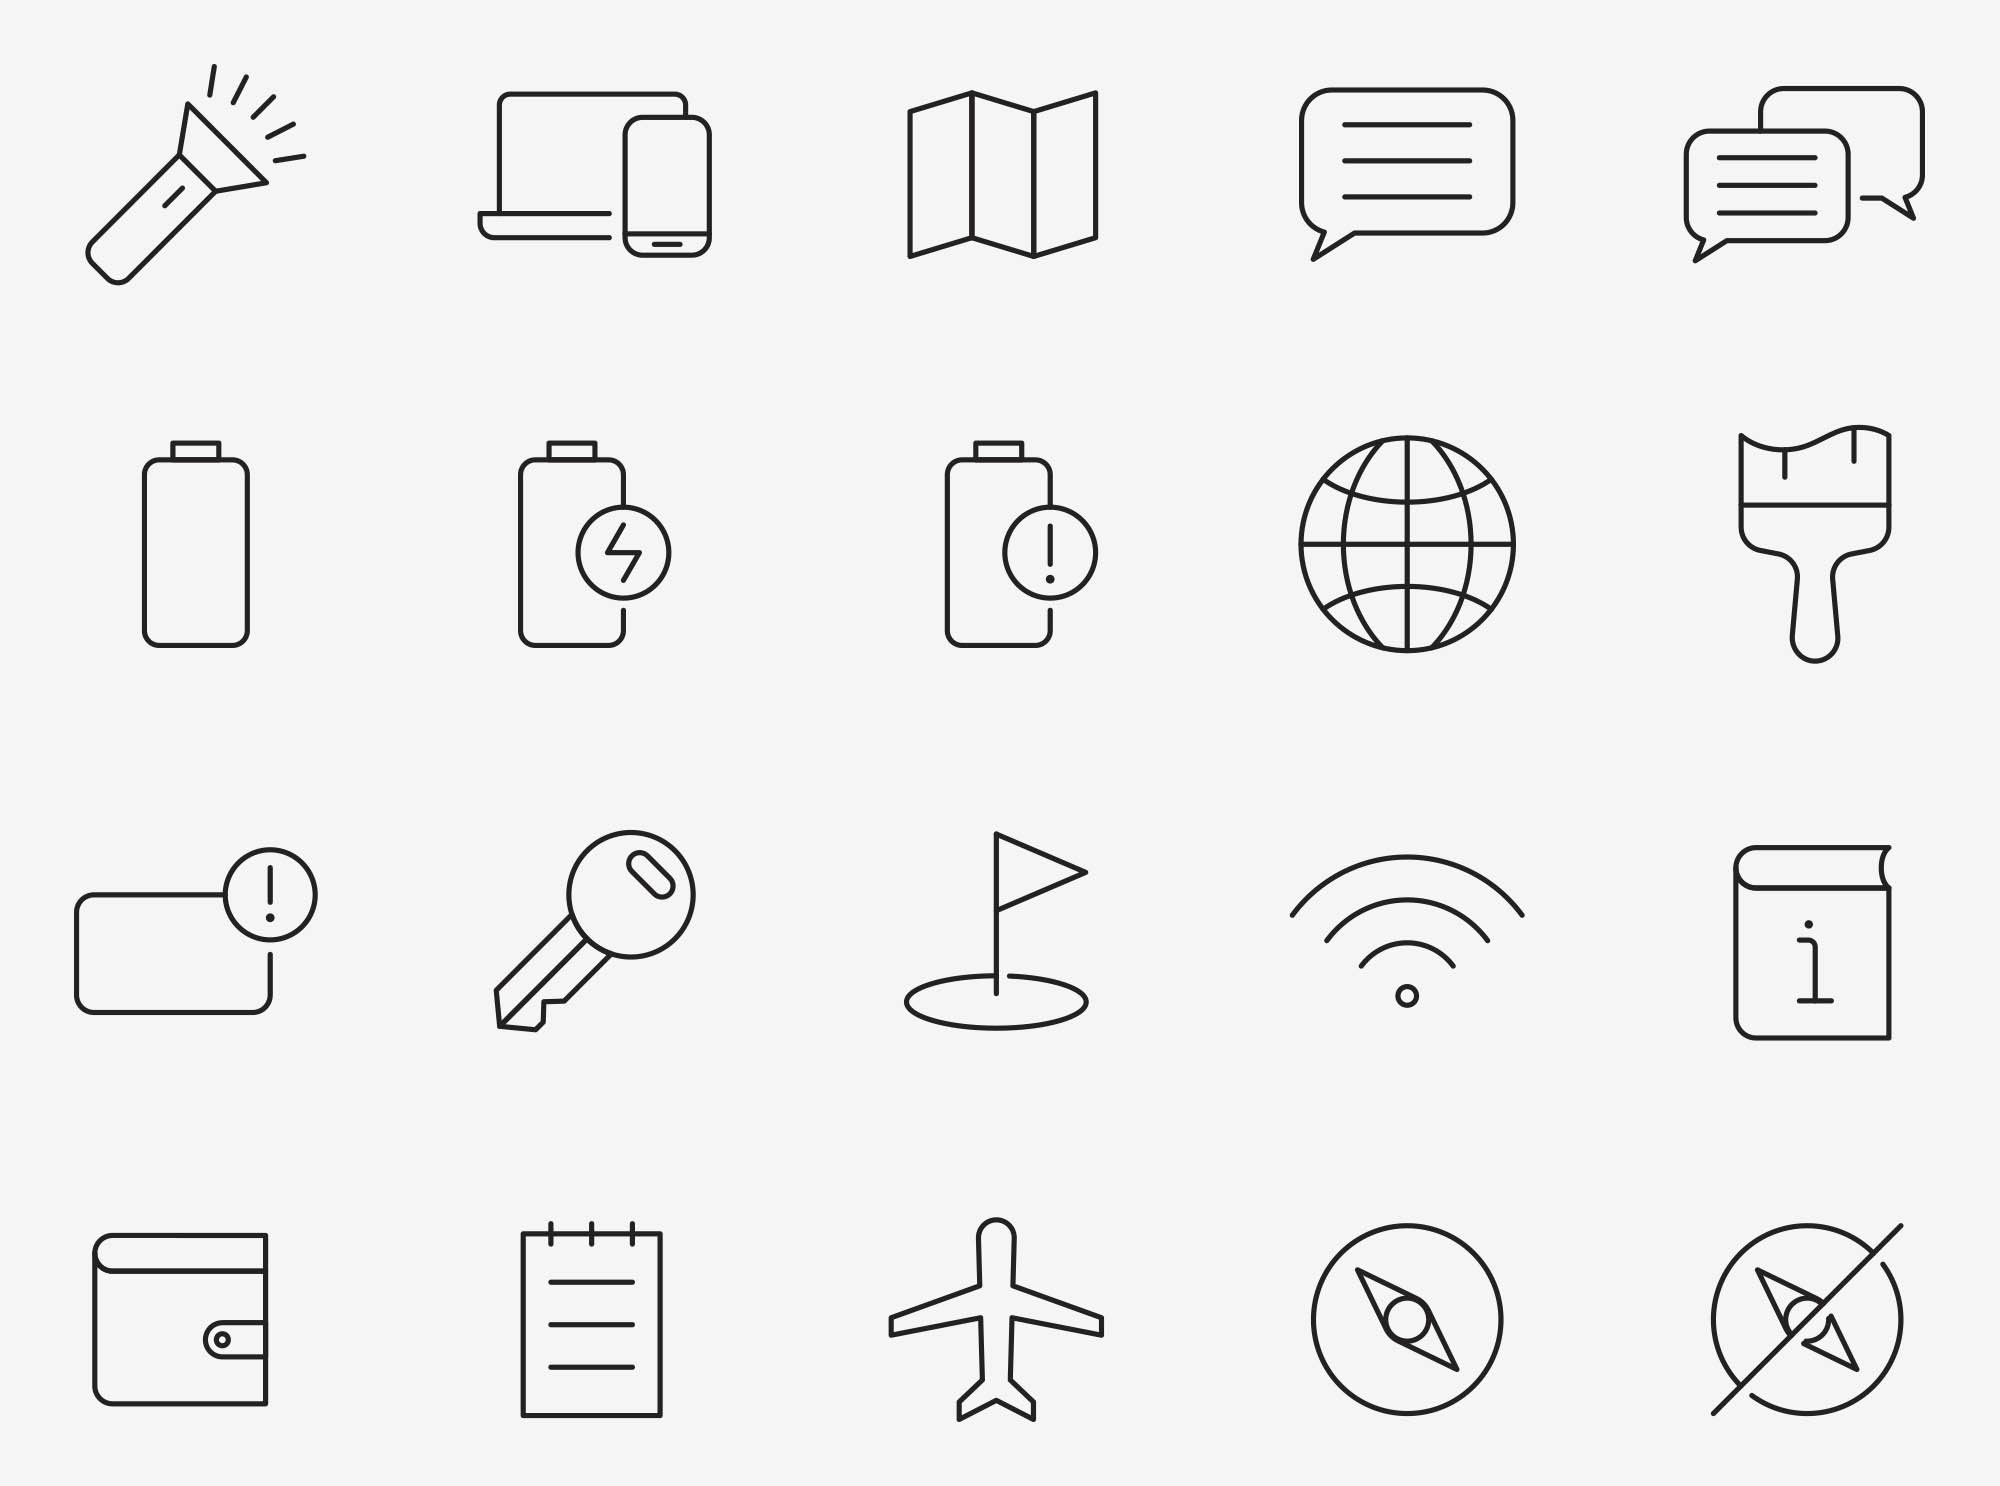 80个UI界面图标 80 Interface Icons 图标素材 第1张